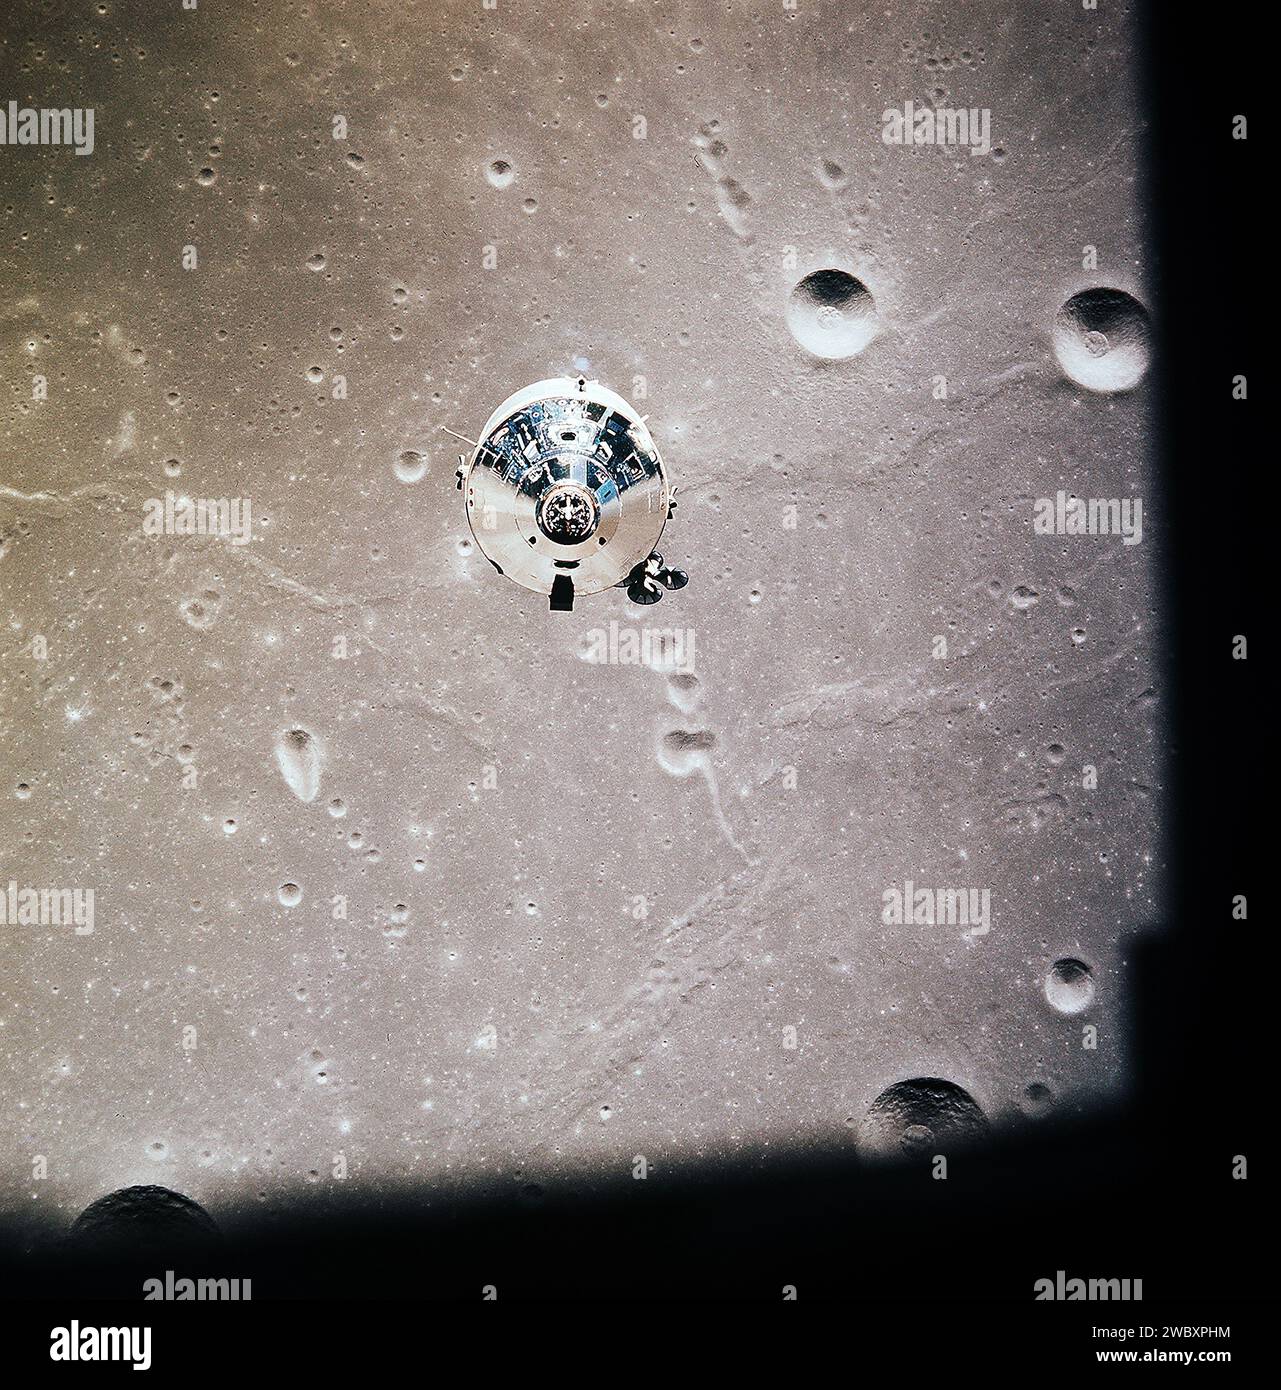 Die Apollo 11 Command and Service Module fotografiert vom Mondmodul im Mondumlauf während der Mondlandungsmission Apollo 11. Die Mondoberfläche darunter befindet sich im nordzentralen Sea of Fertility, Johnson Space Center, NASA, 20. Juli 1969 Stockfoto